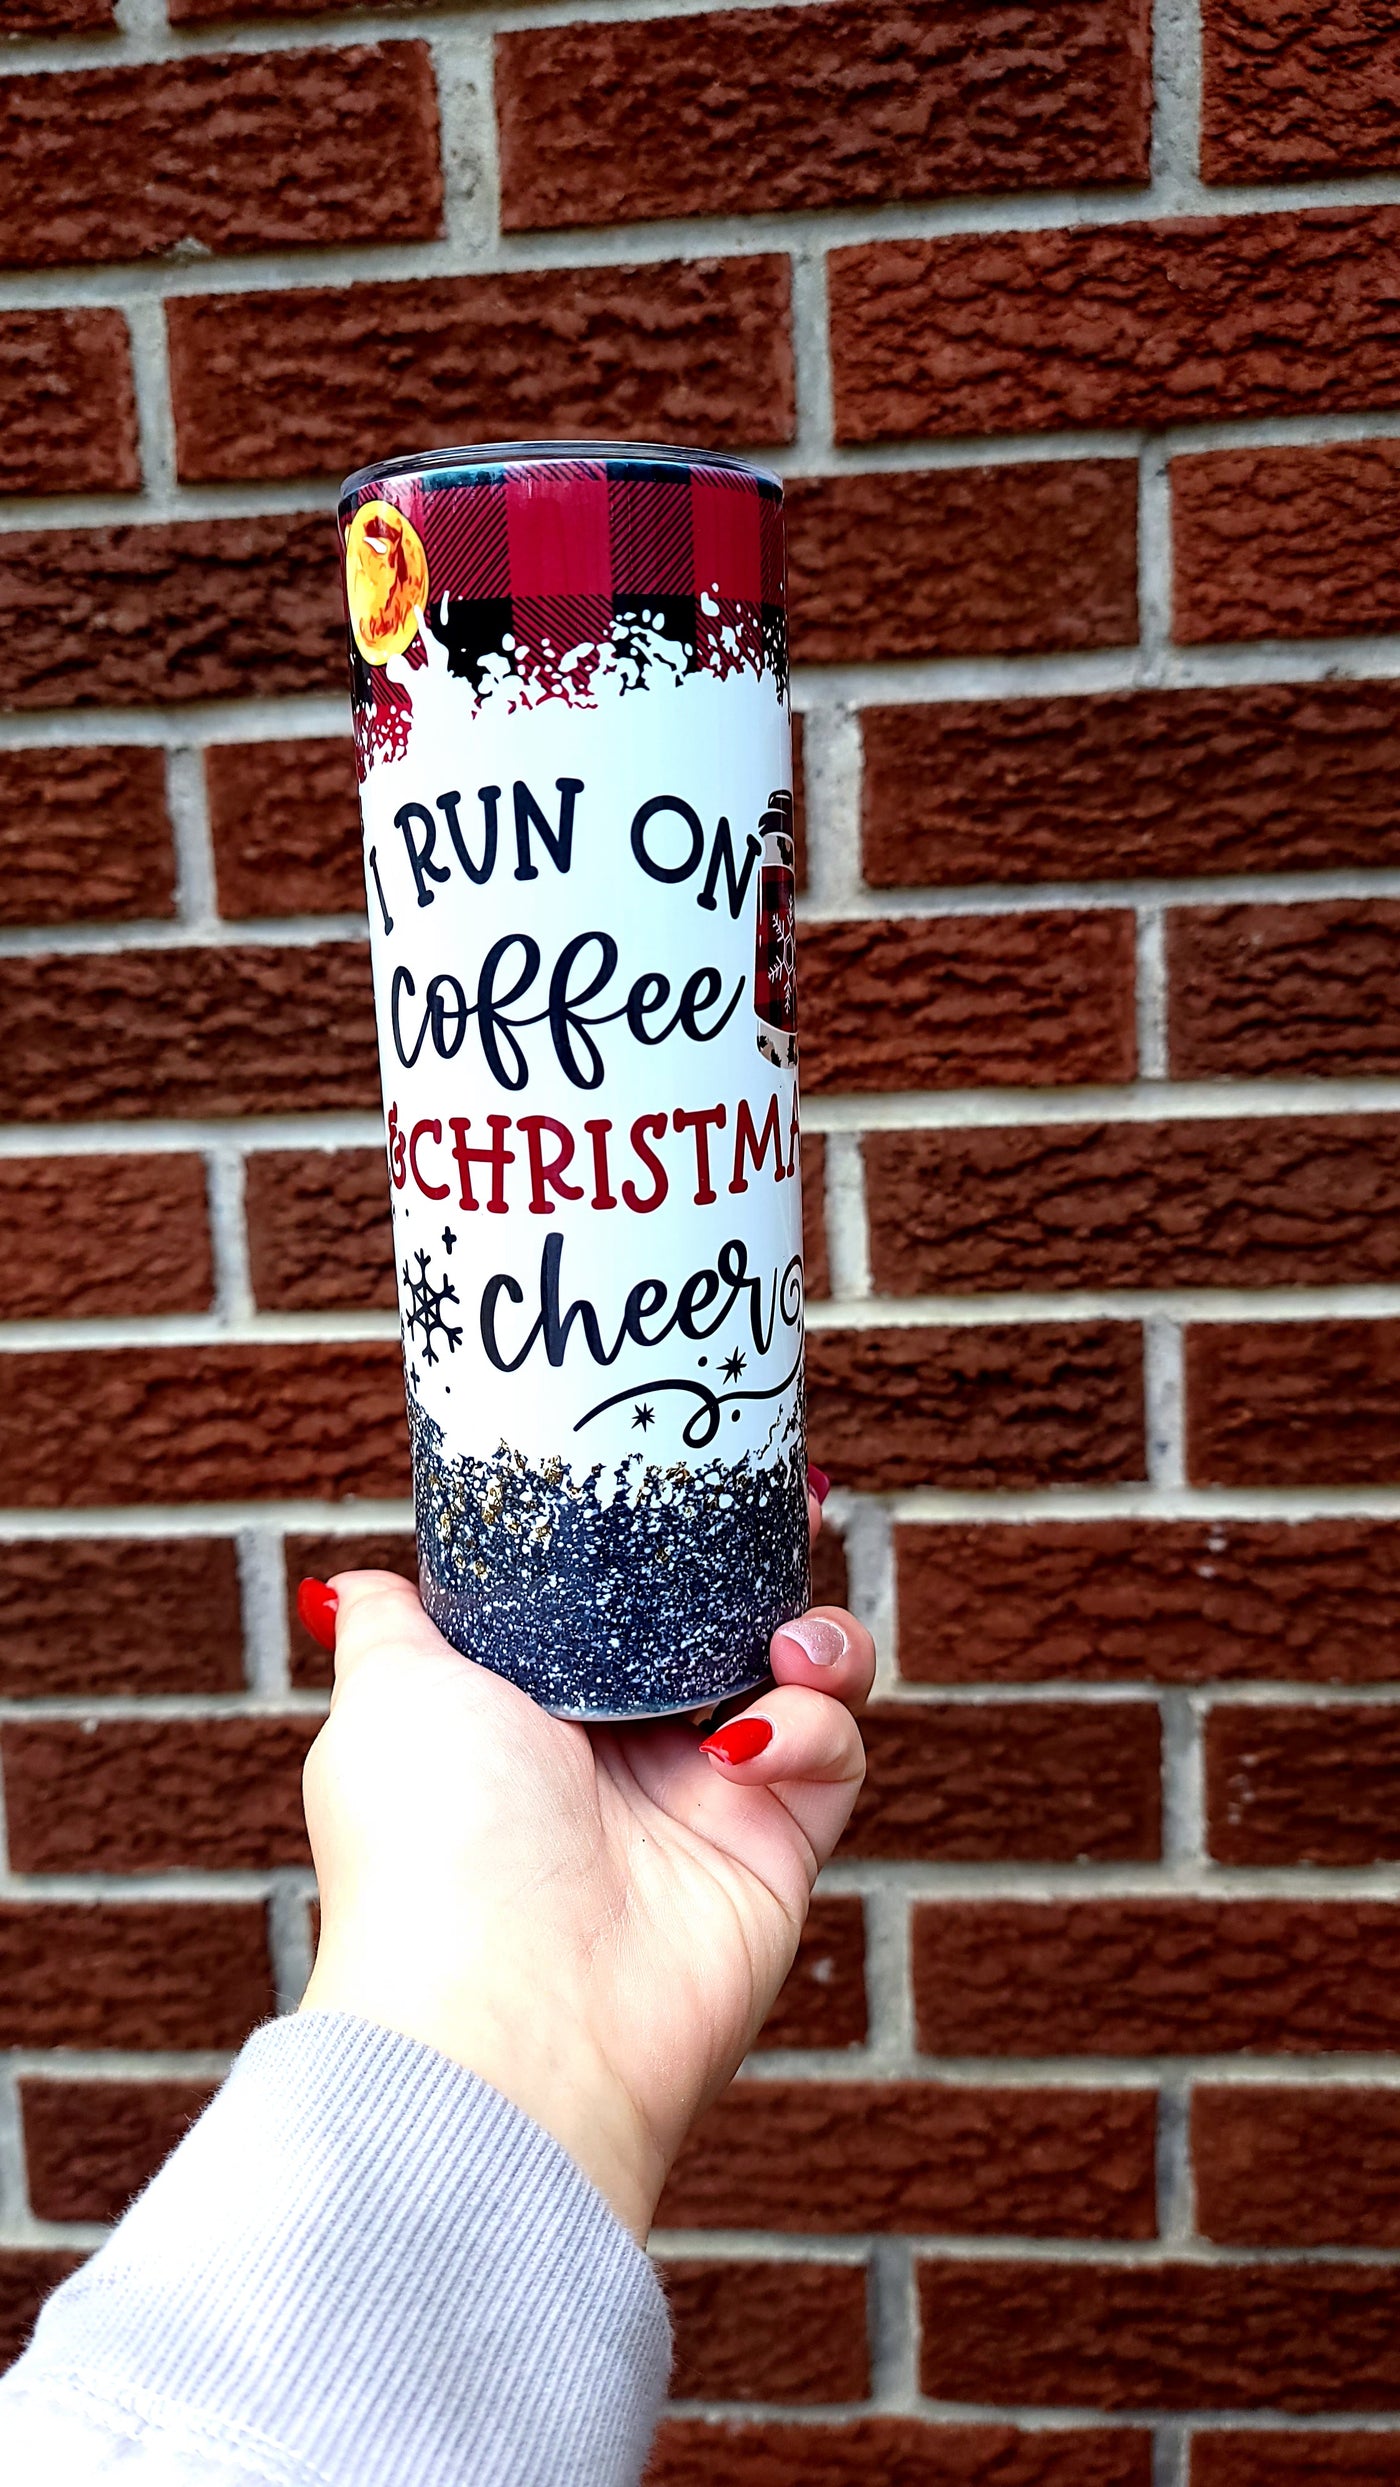 Coffee and Christmas cheer